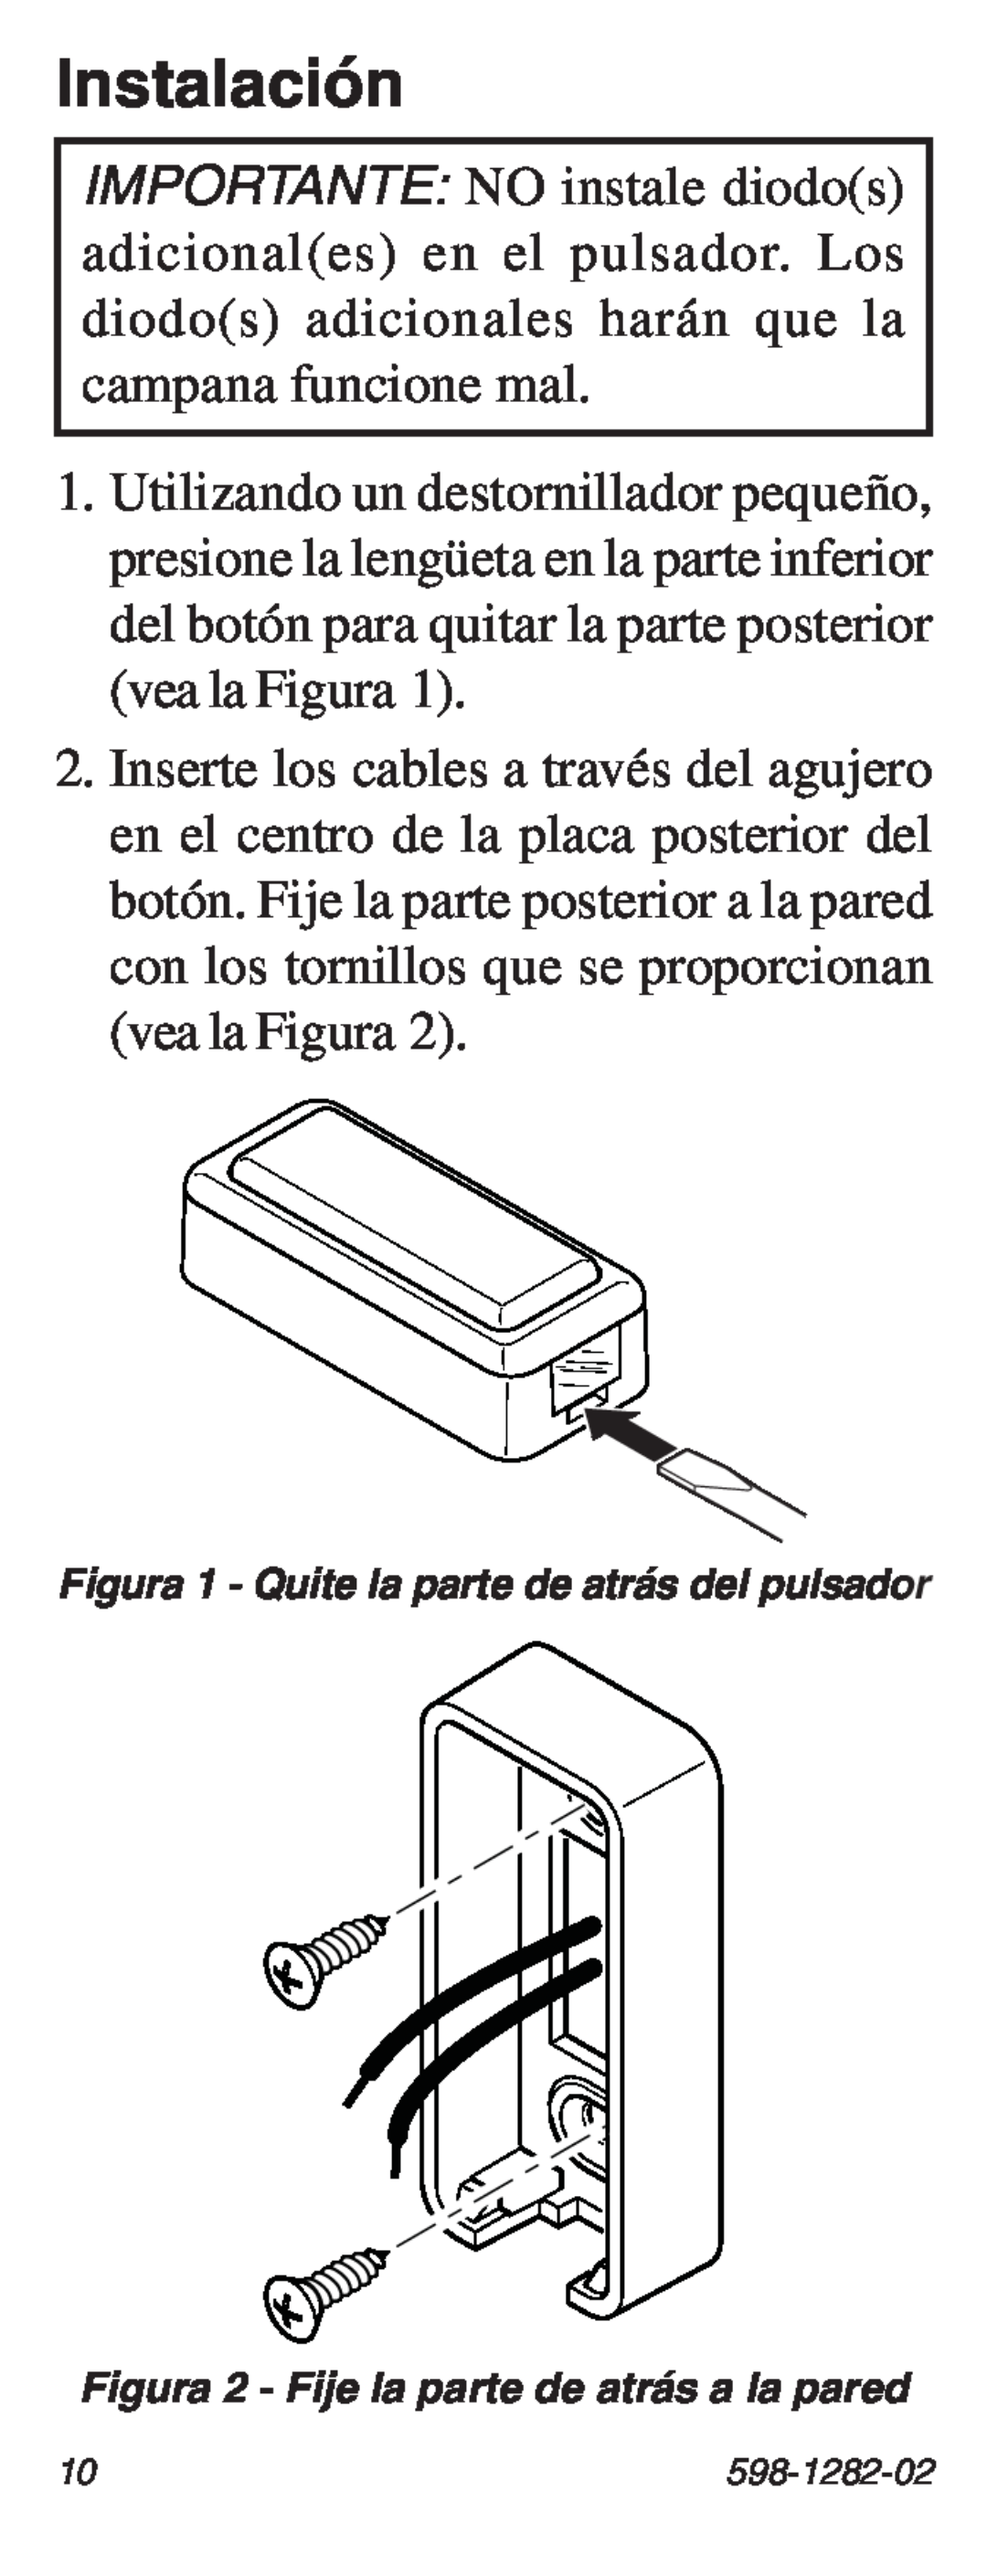 Heath Zenith 598-1282-02 manual Instalación, Figura 1 - Quite la parte de atrás del pulsador 